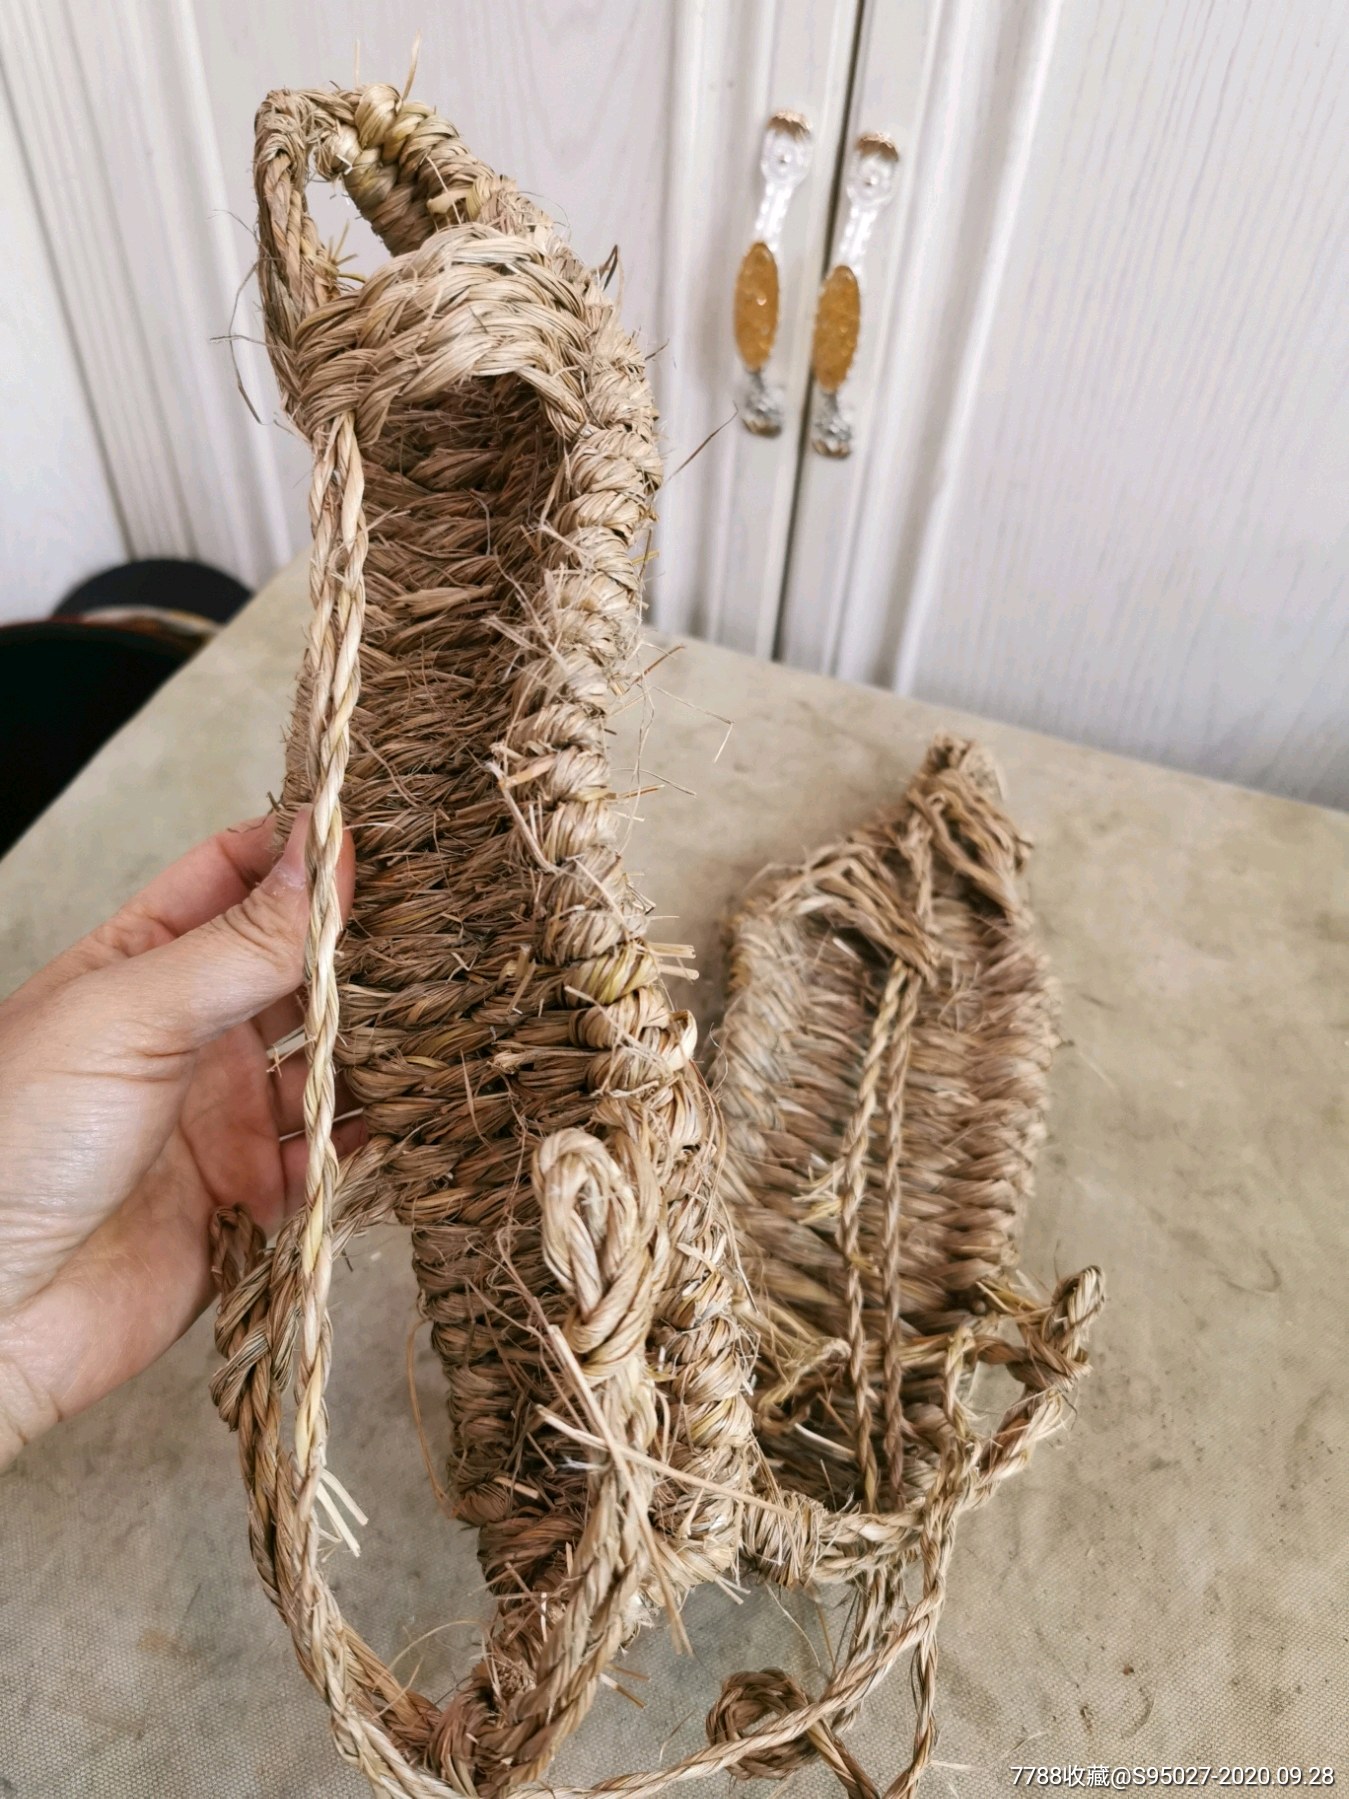 红军时期草鞋,老物件